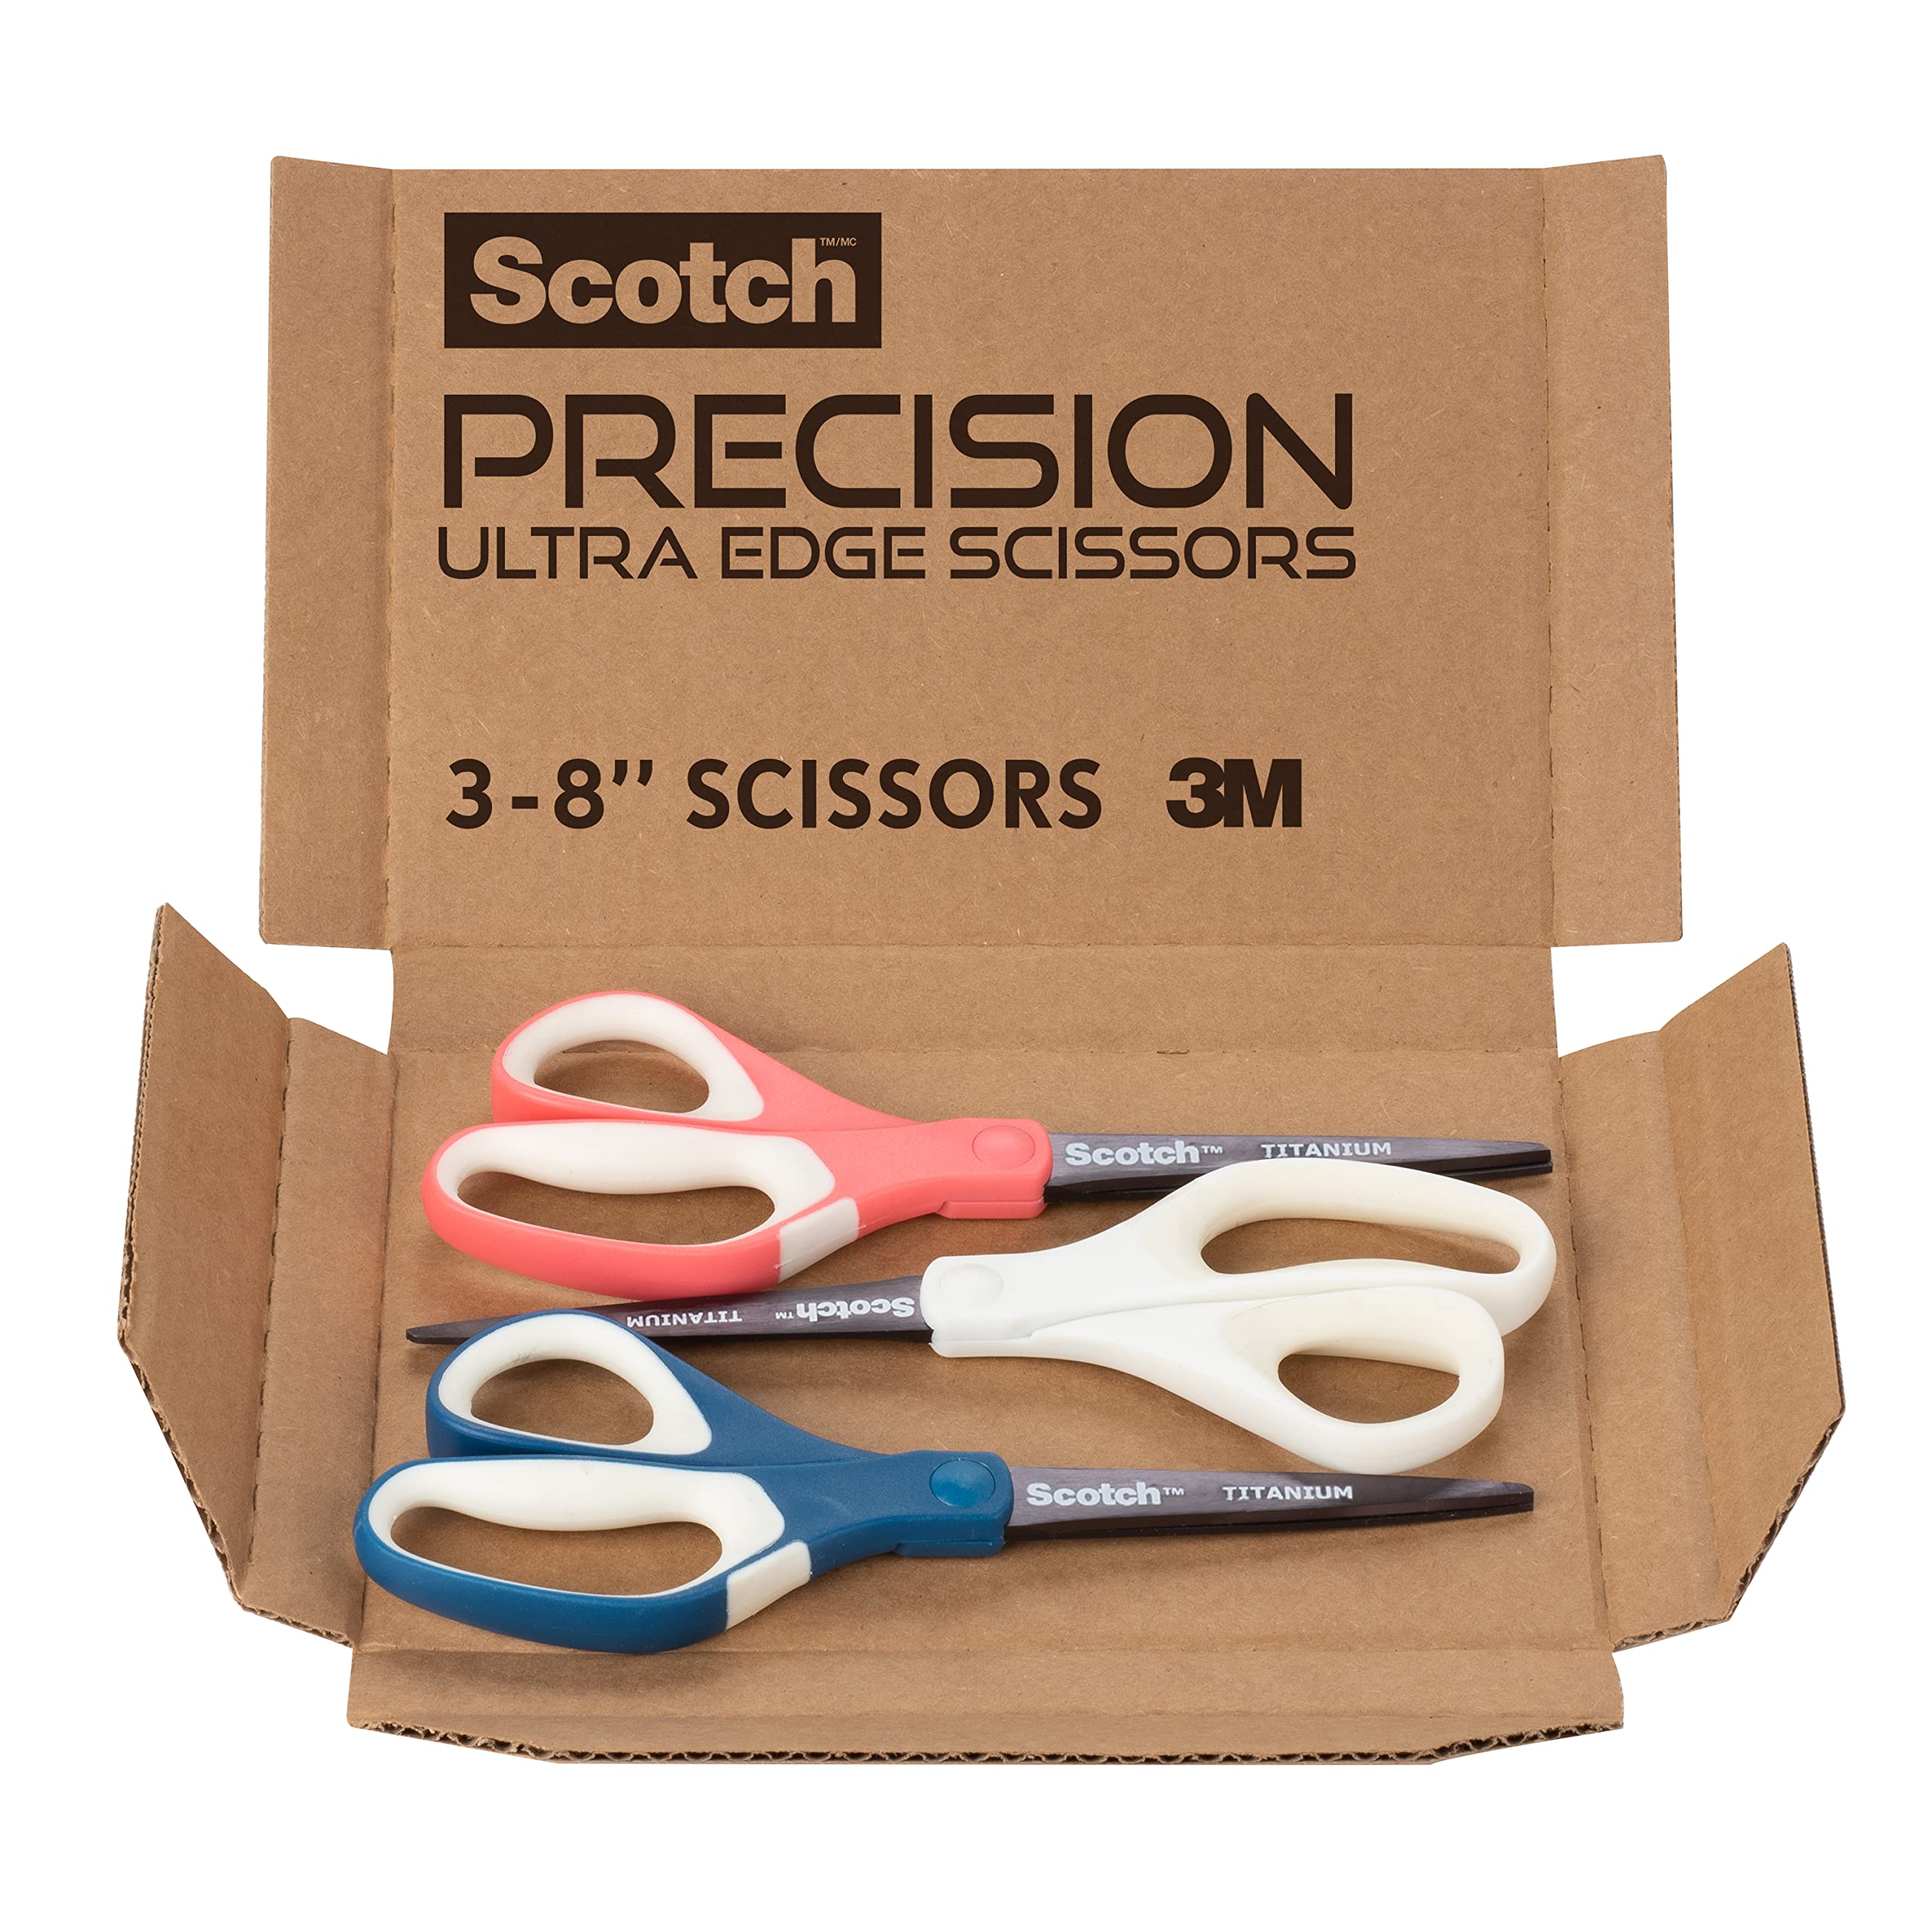 3-pack Scotch Brand Precision Ultra Edge Scissors, 8 Inch $9.42